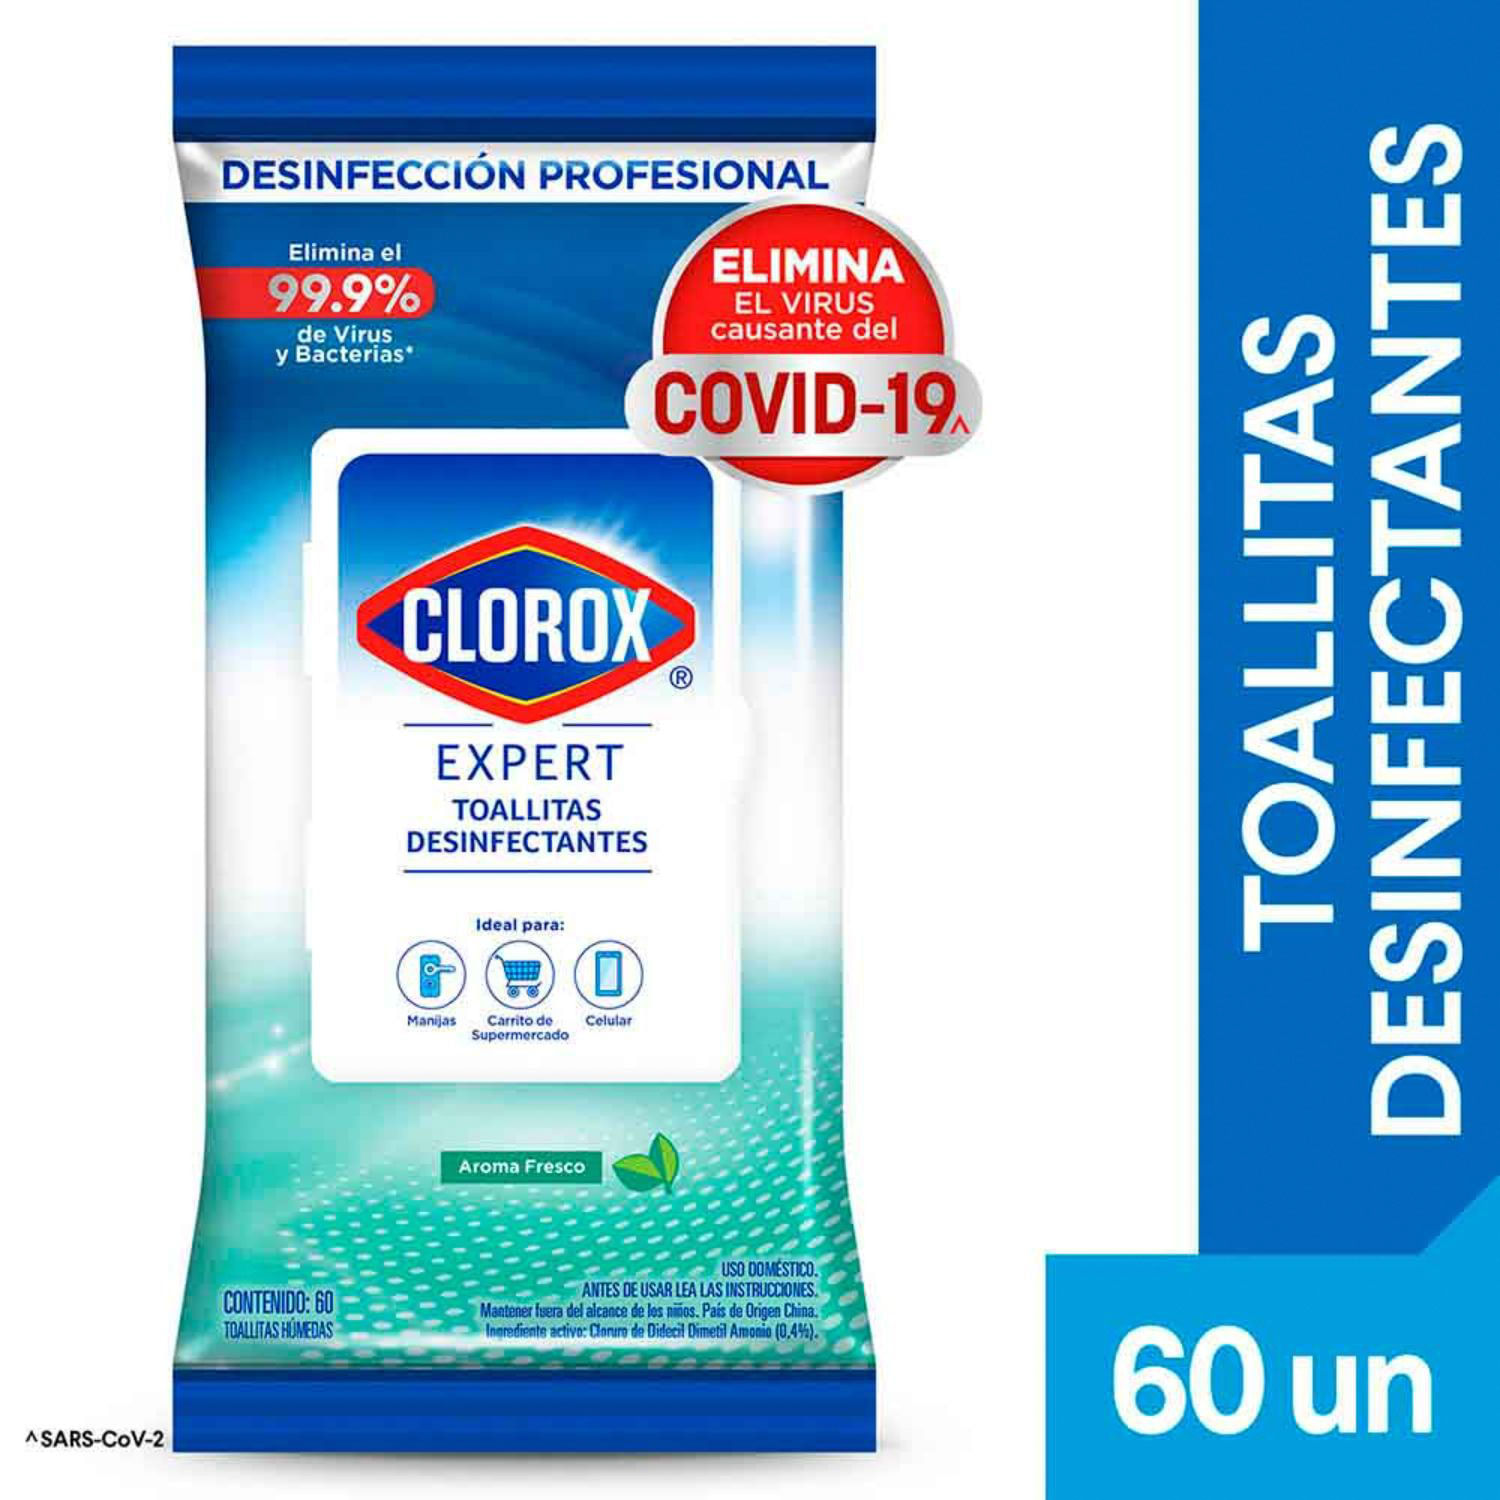 Toallitas Desinfectantes Escudo Con 50 Toallas Elimina 99.9%